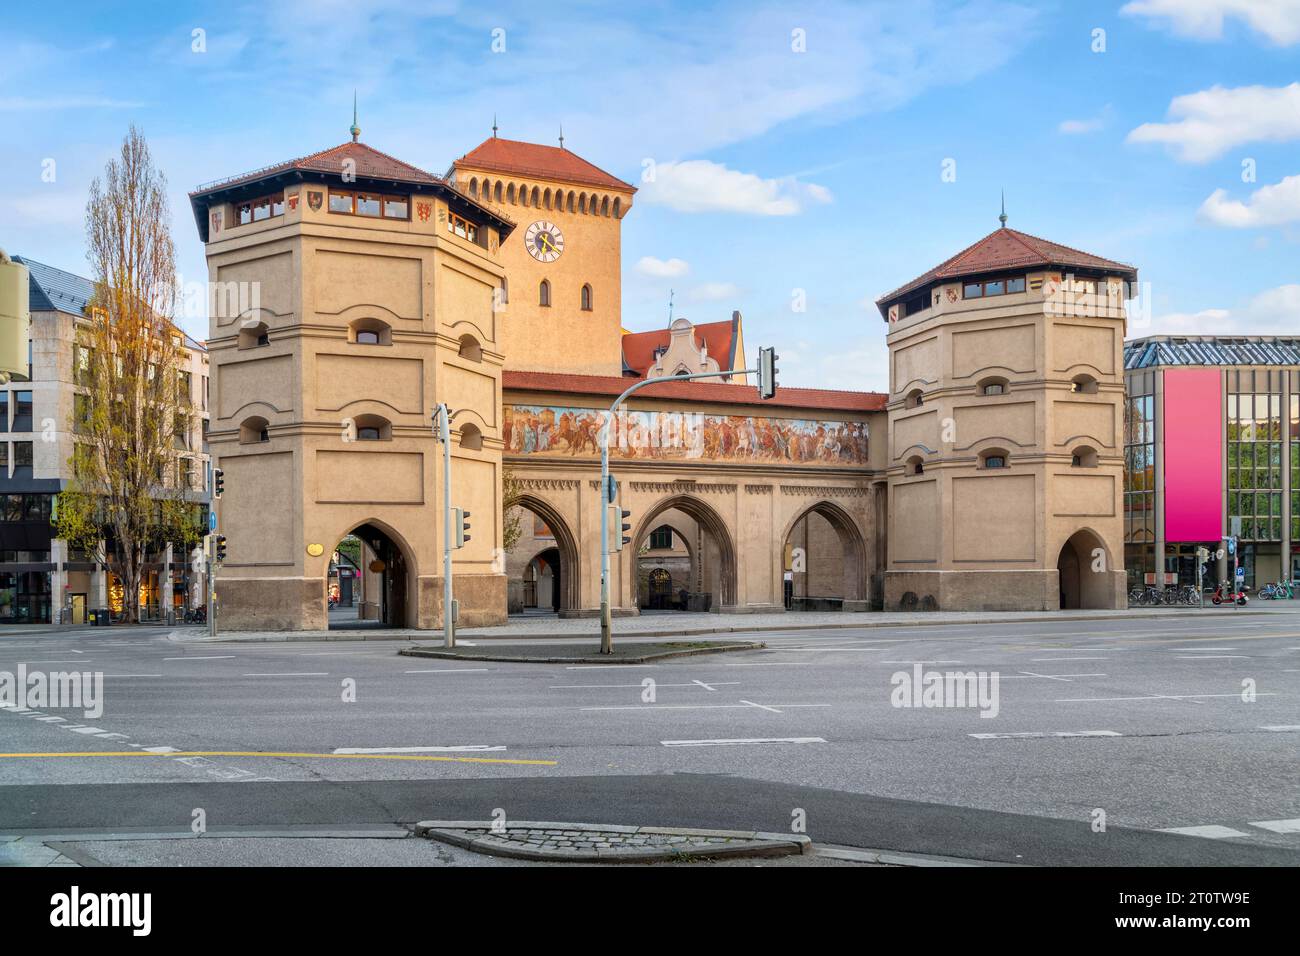 Isartor ou Isar Gate - porte médiévale de la ville reconstruite en 1833 à Munich, Allemagne Banque D'Images